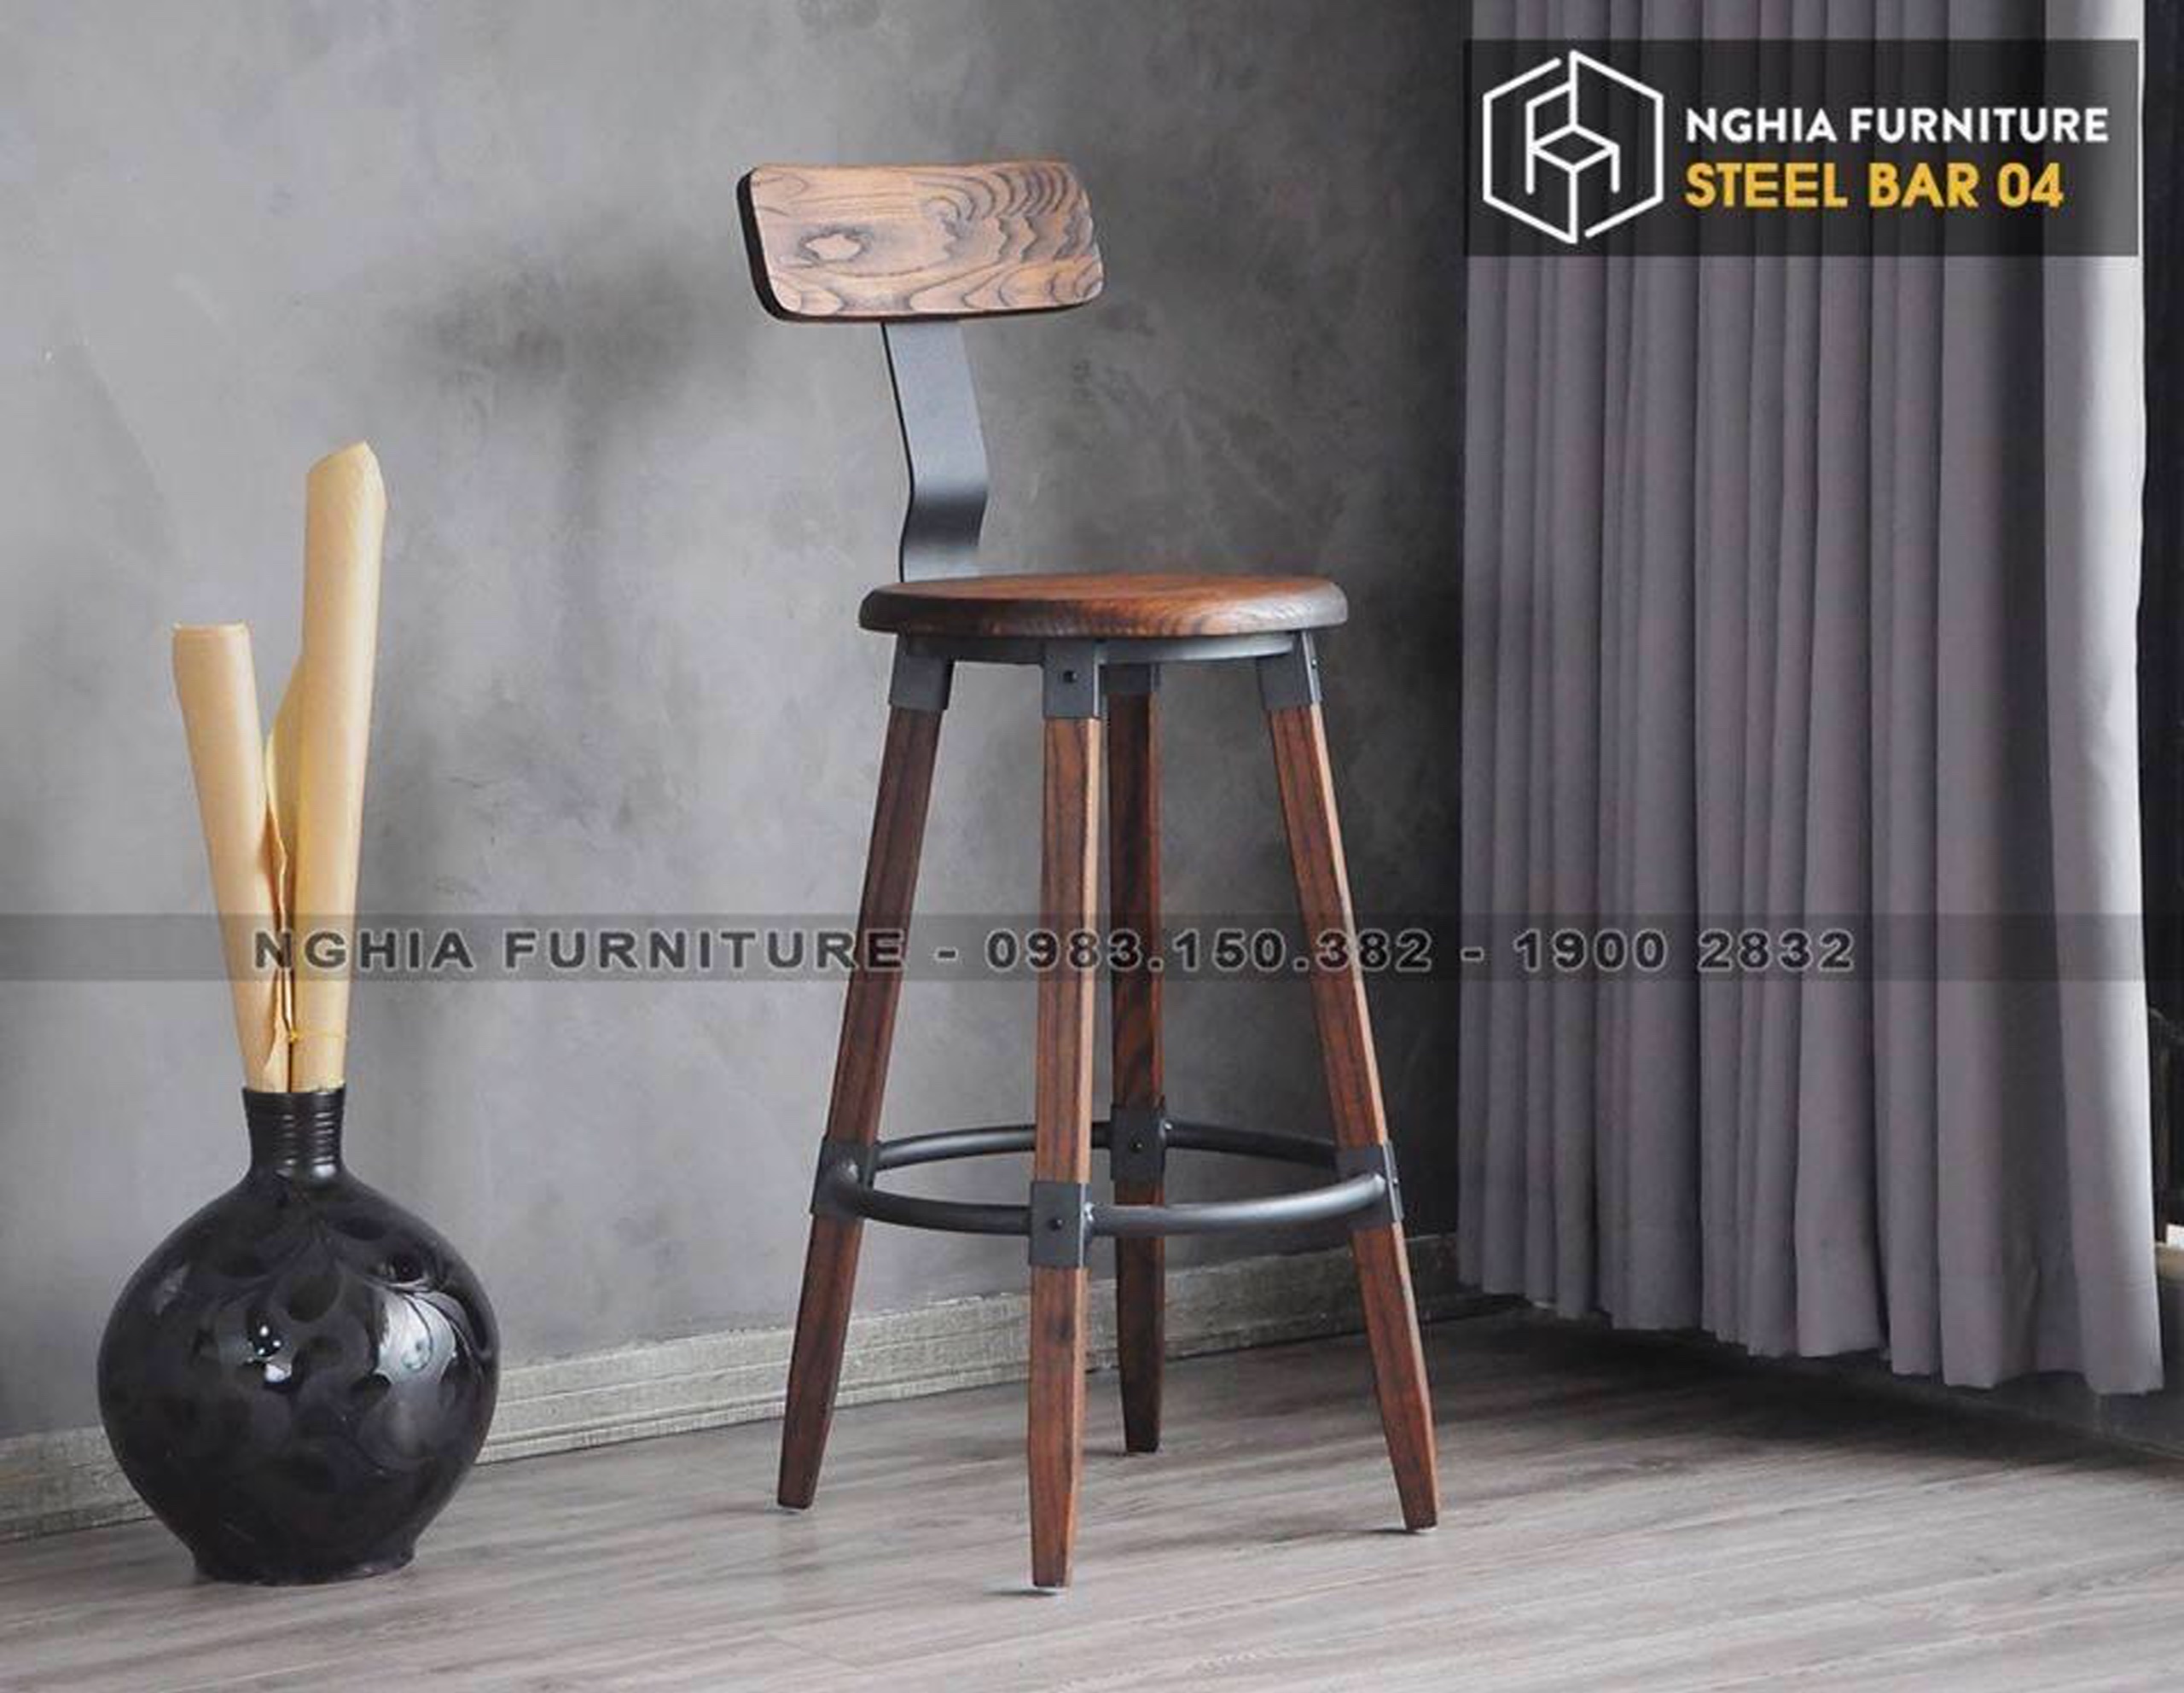 Đồ gỗ nội thất - Nghia Furniture - Công Ty Cổ Phần Nhà Đẹp Việt Nam